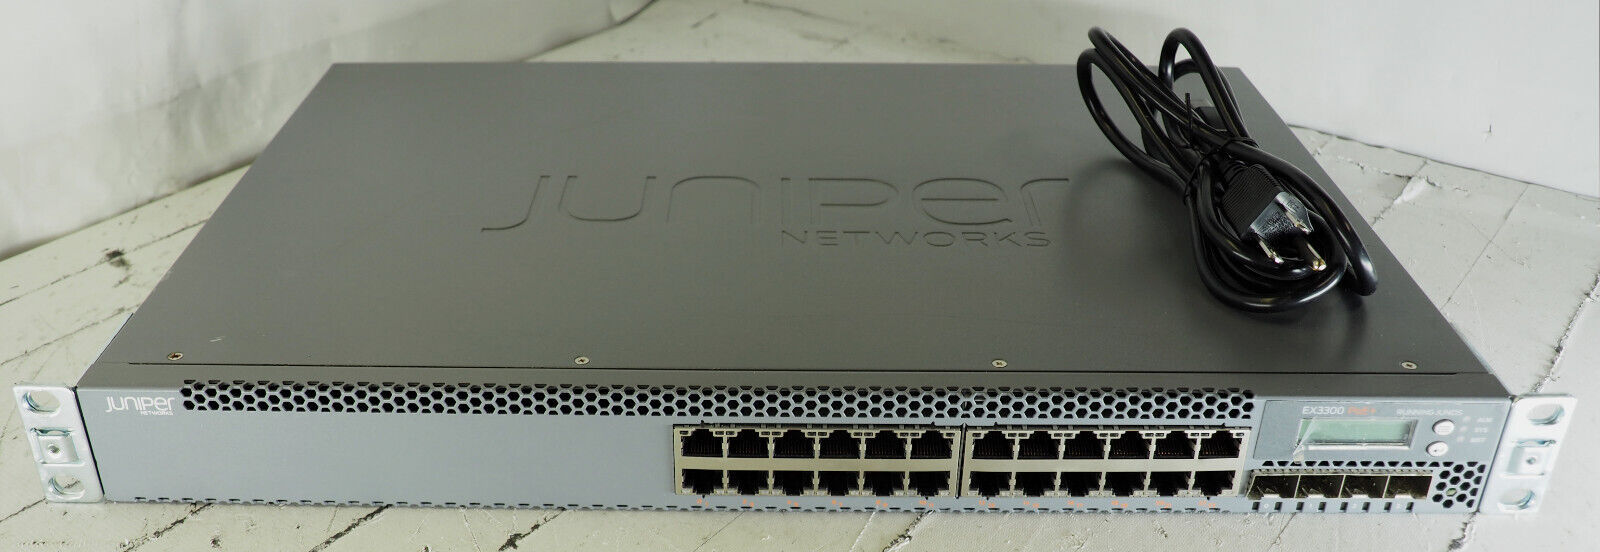 Juniper EX3300-24P 24 Port Gigabit PoE 4 SFP 1/10G Ethernet Network Switch